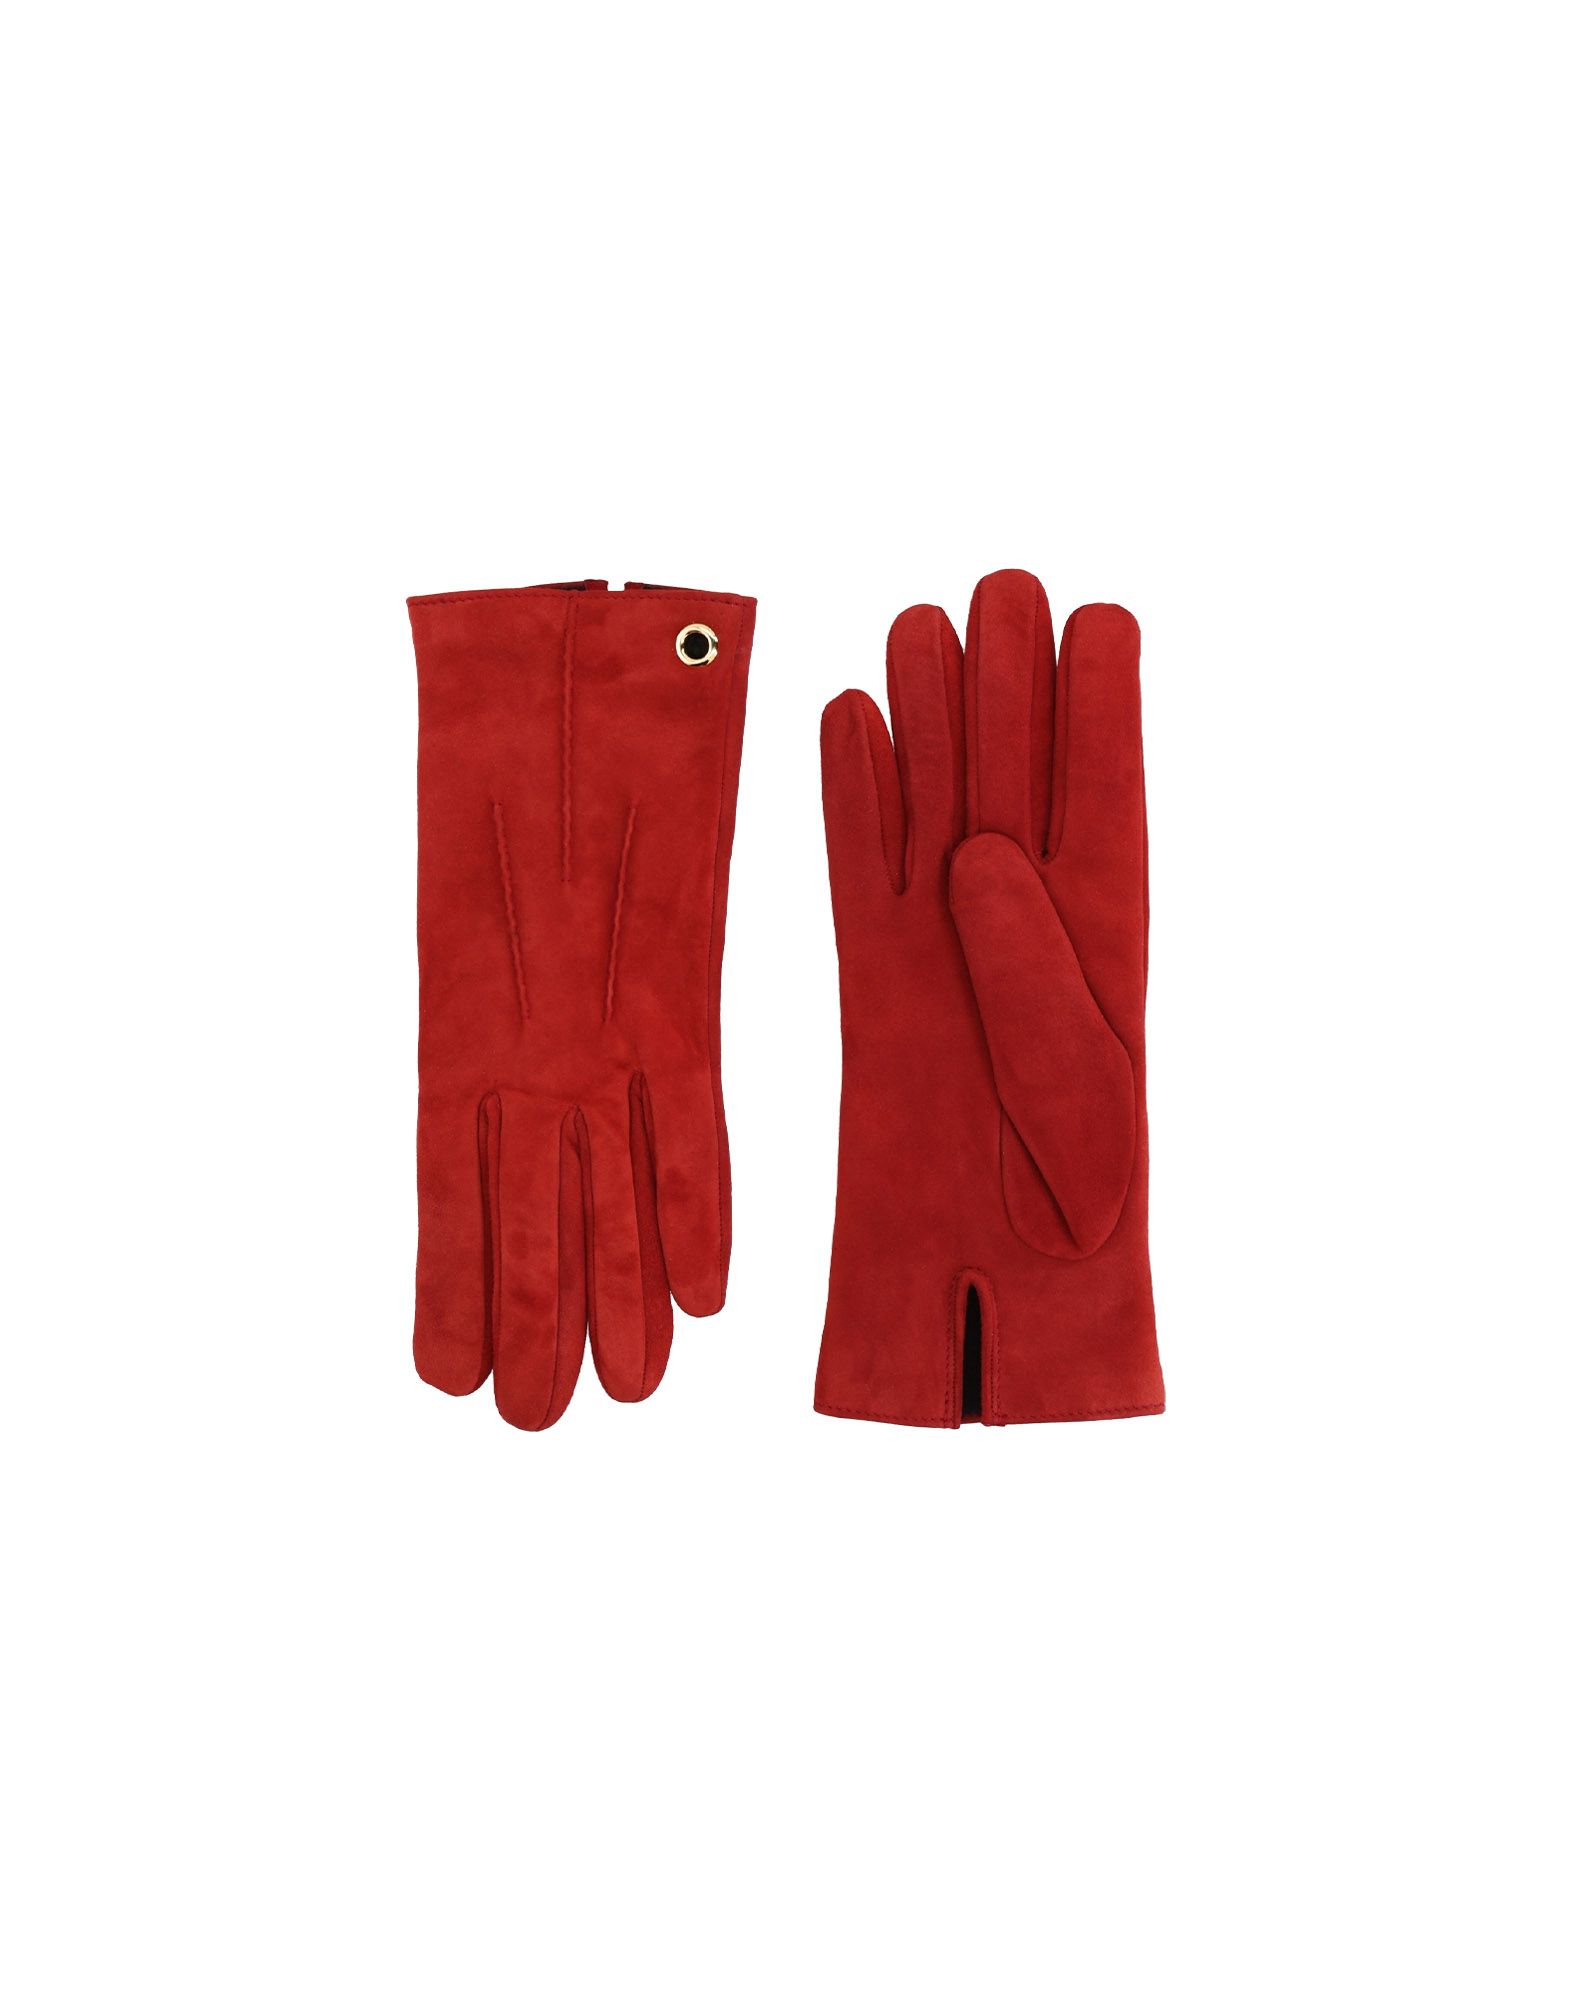 MARIO PORTOLANO Gloves,46578675AH 5